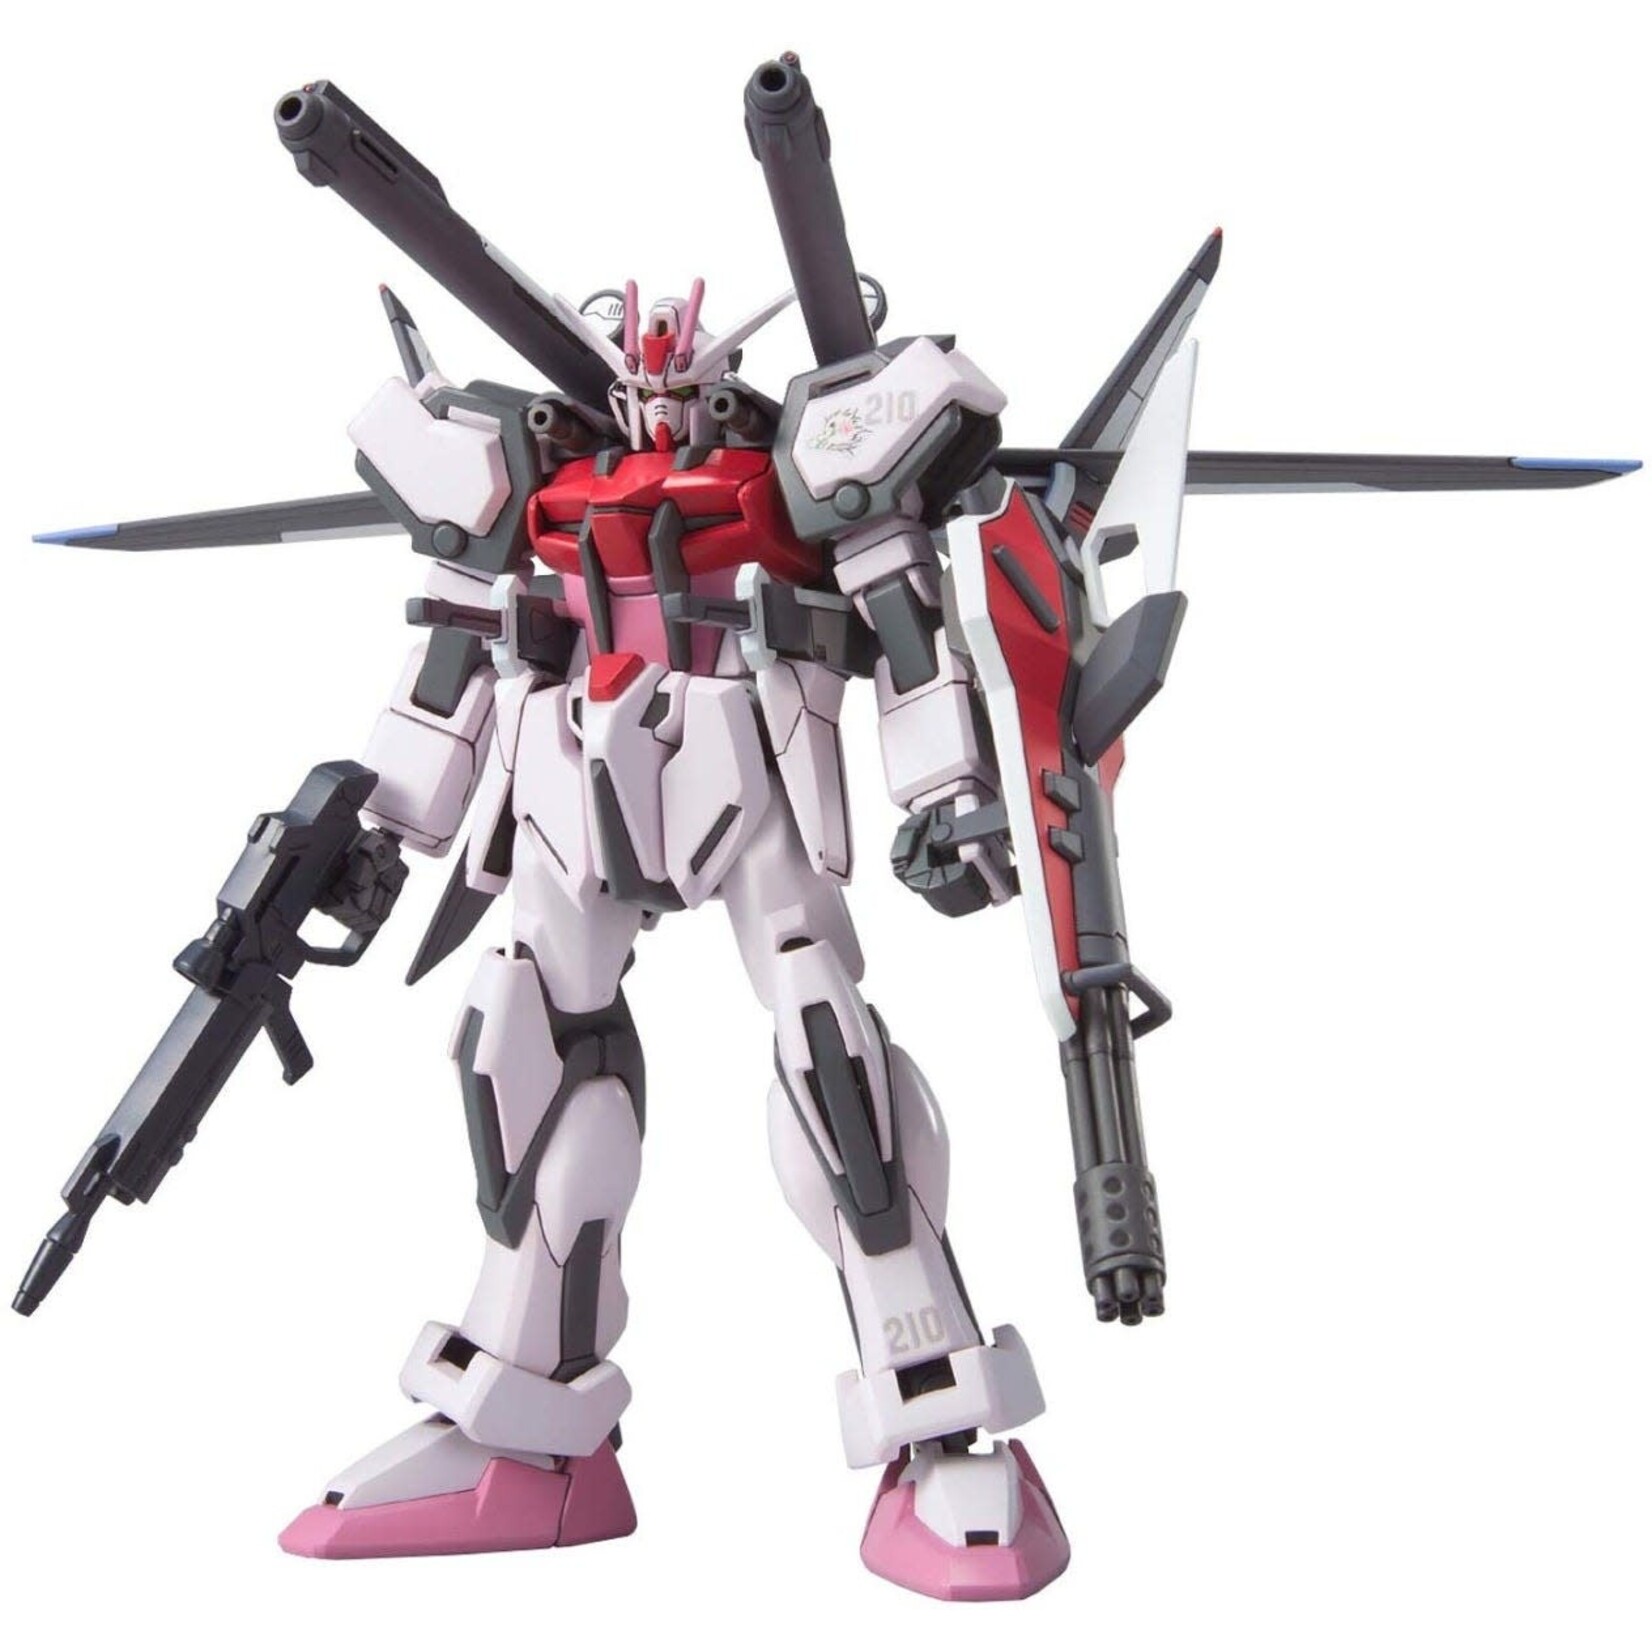 Bandai Bandai 1124918 HG MSV #1 Strike Rouge + IWSP "Gundam SEED"